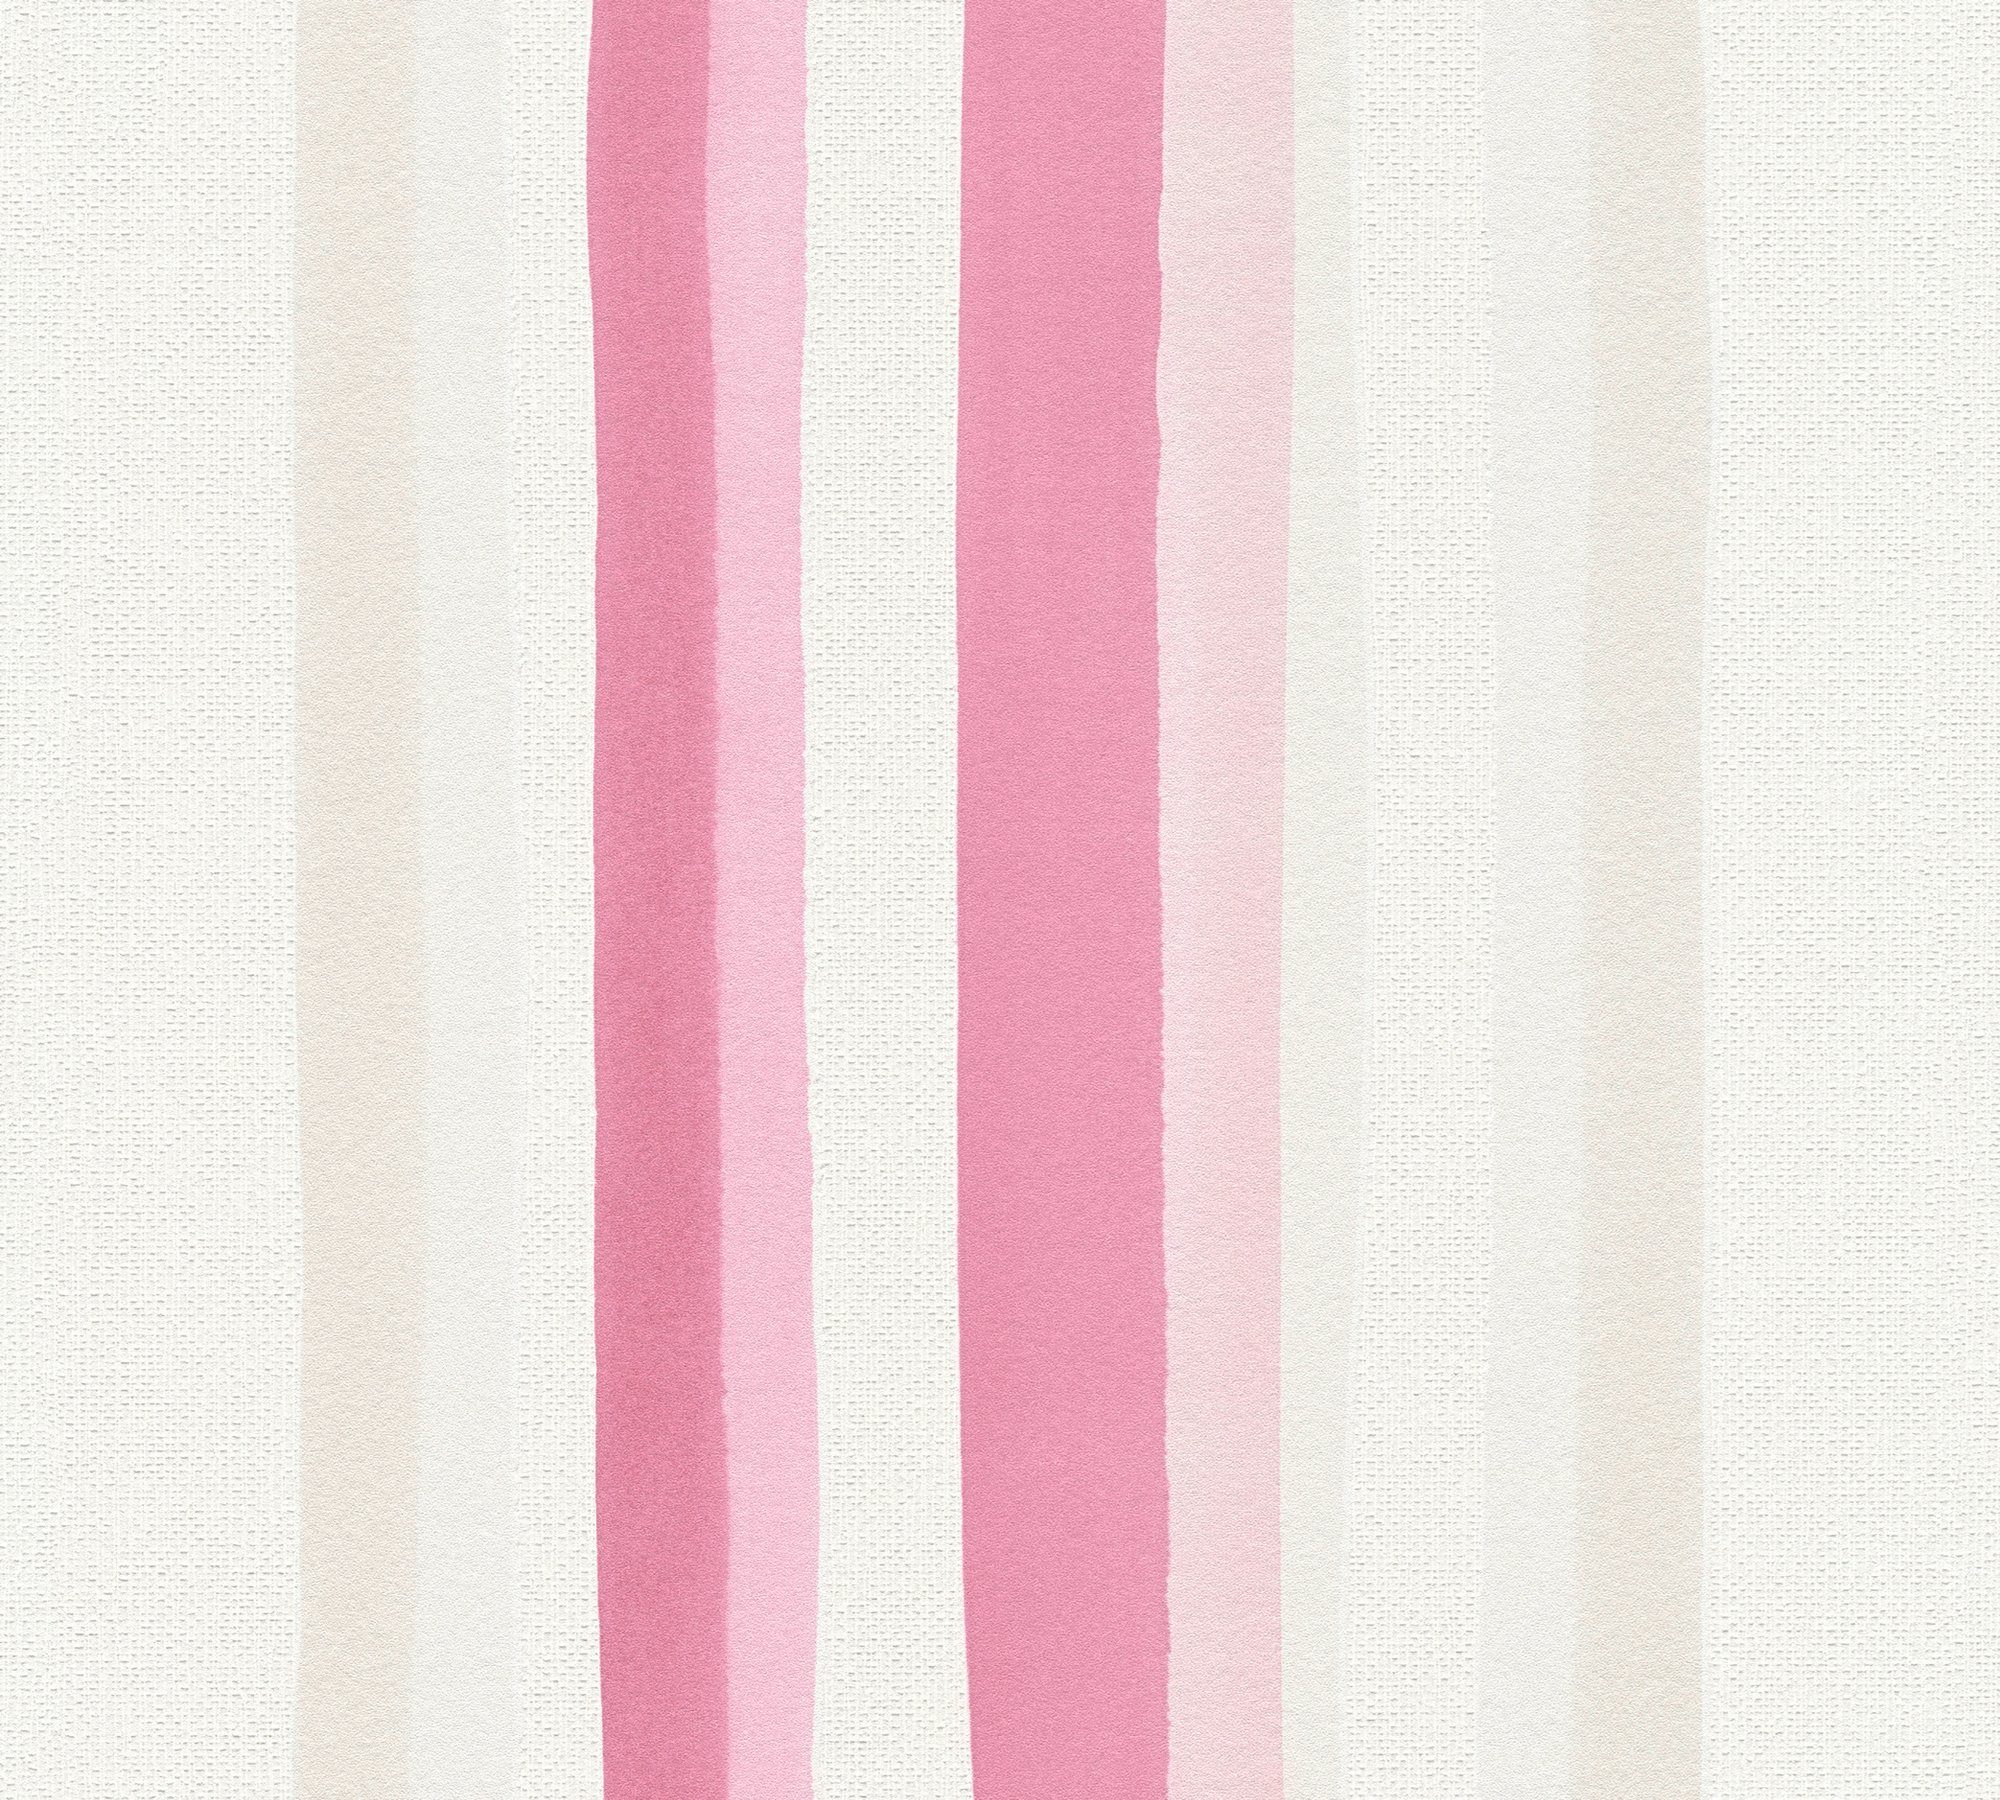 Création strukturiert, A.S. Tapete Wall, beige/creme/rosa Vliestapete Premium Streifen